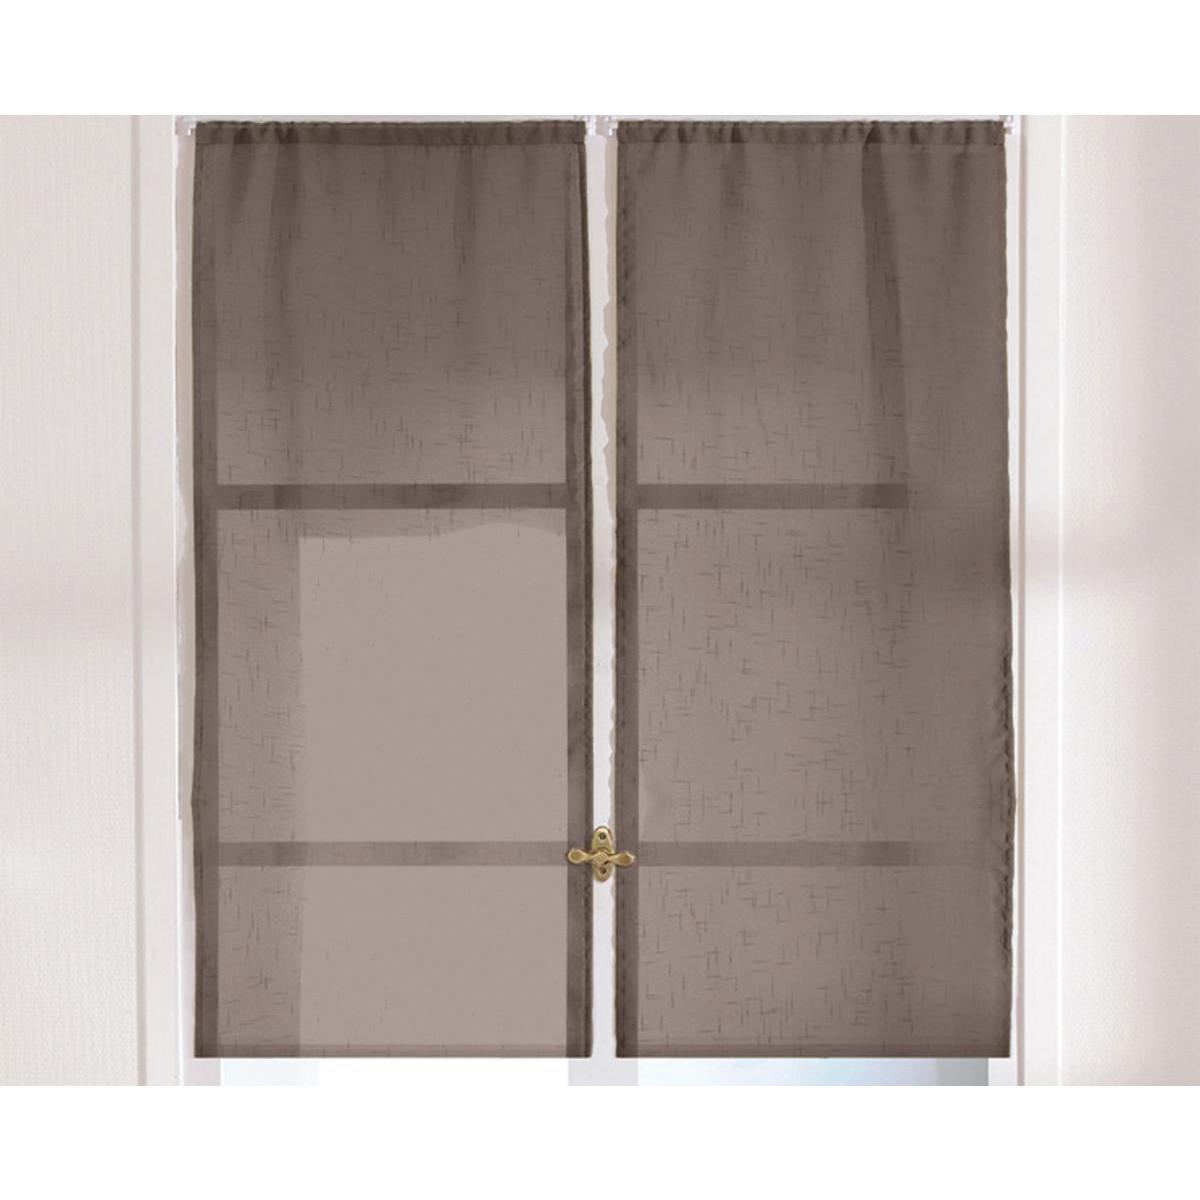 Paire de vitrages - 100 % polyester - 60 x 160 cm - Marron